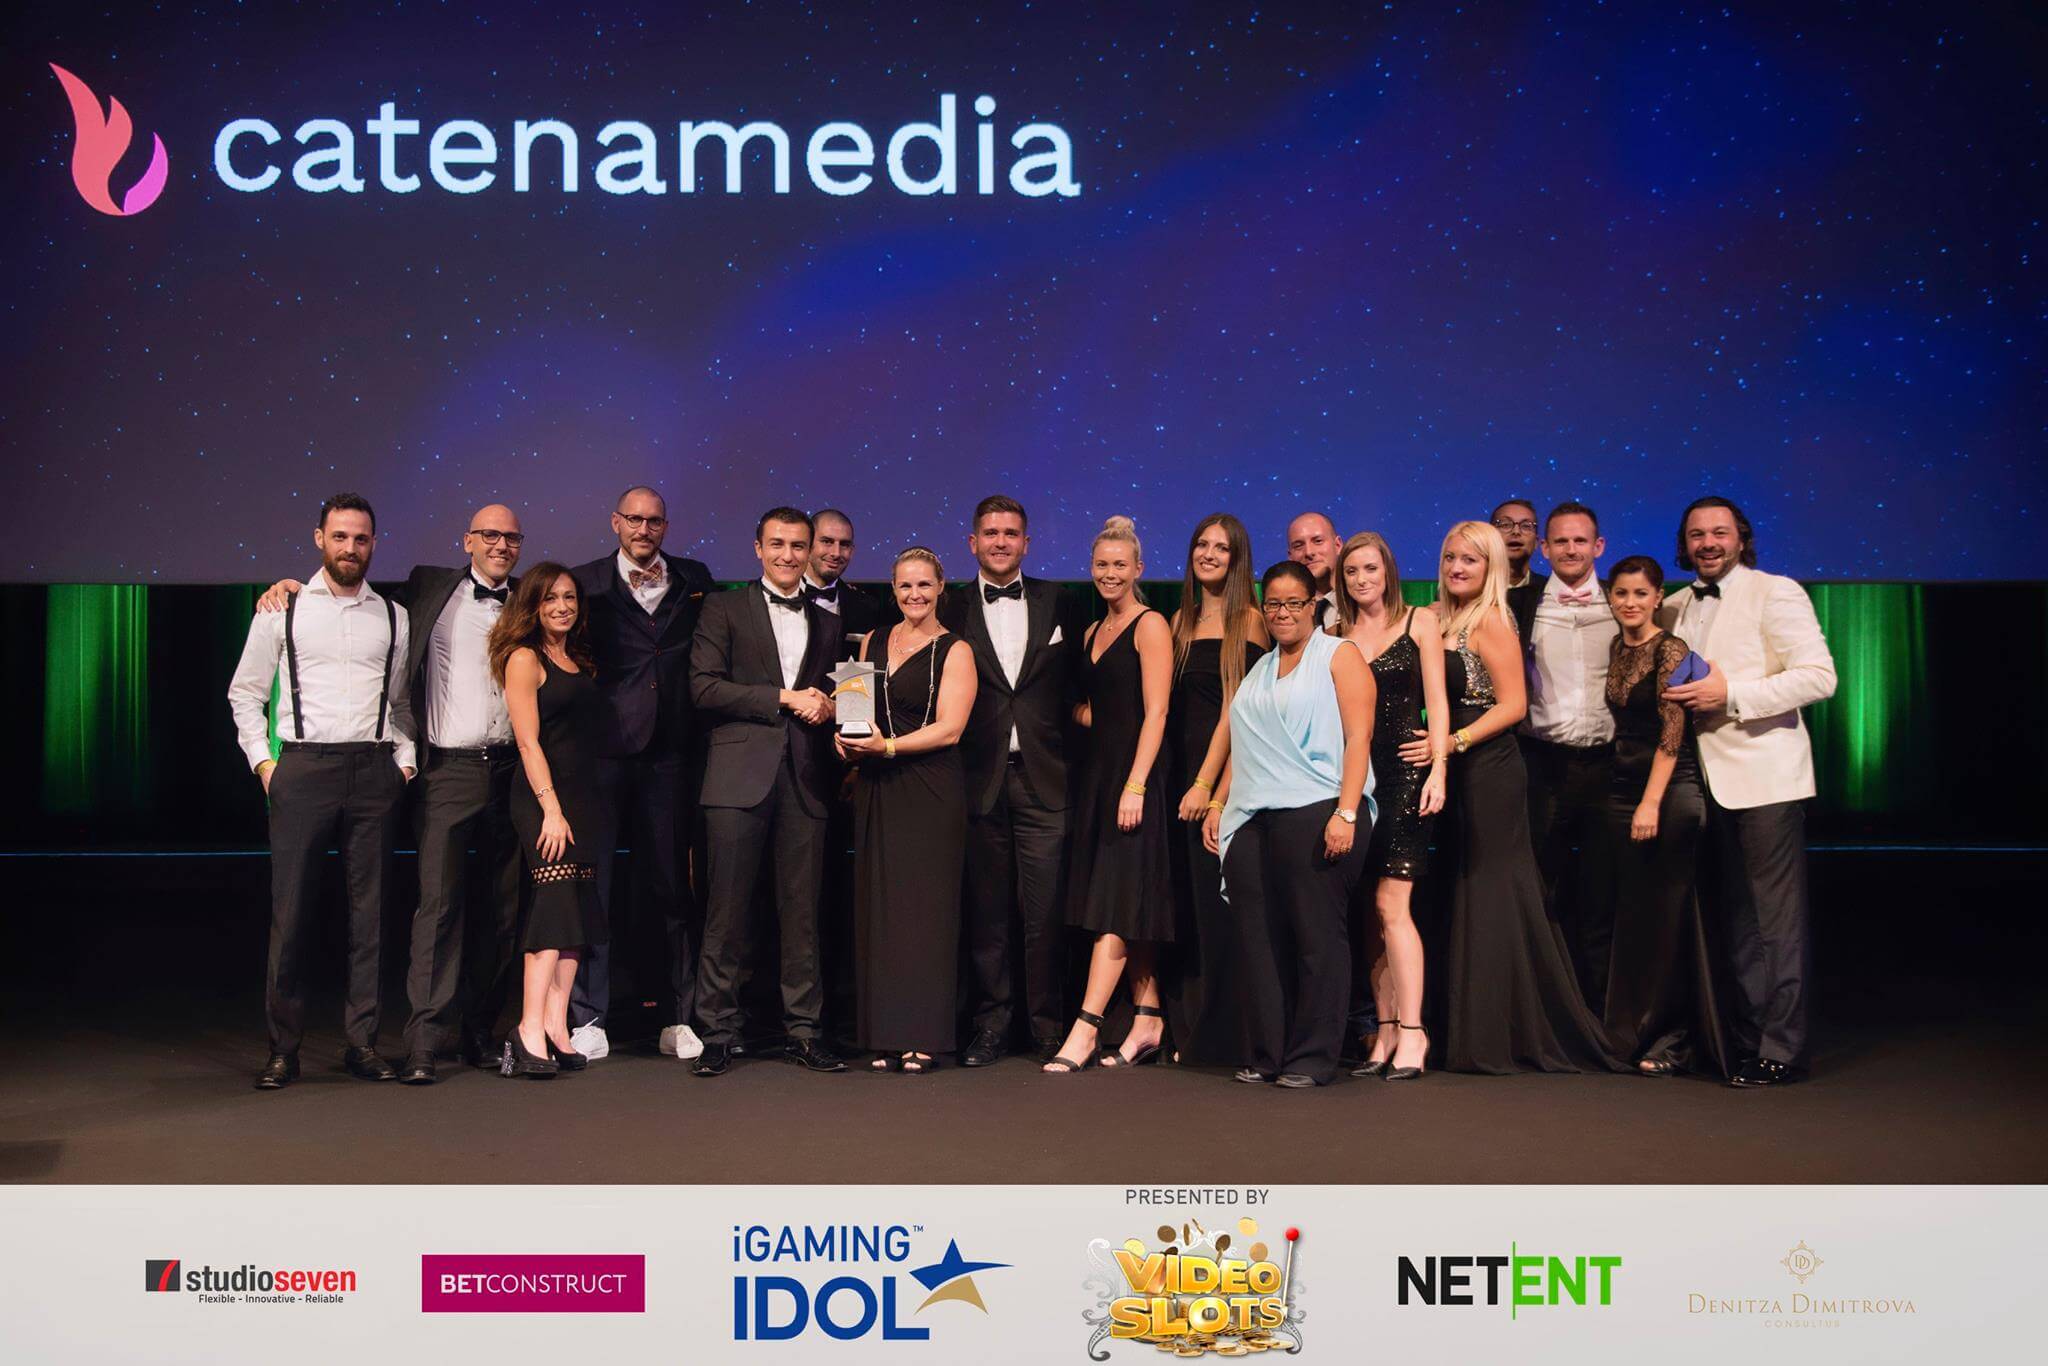 Catena Media Employer of the Year 2017 in iGamingIdol awards